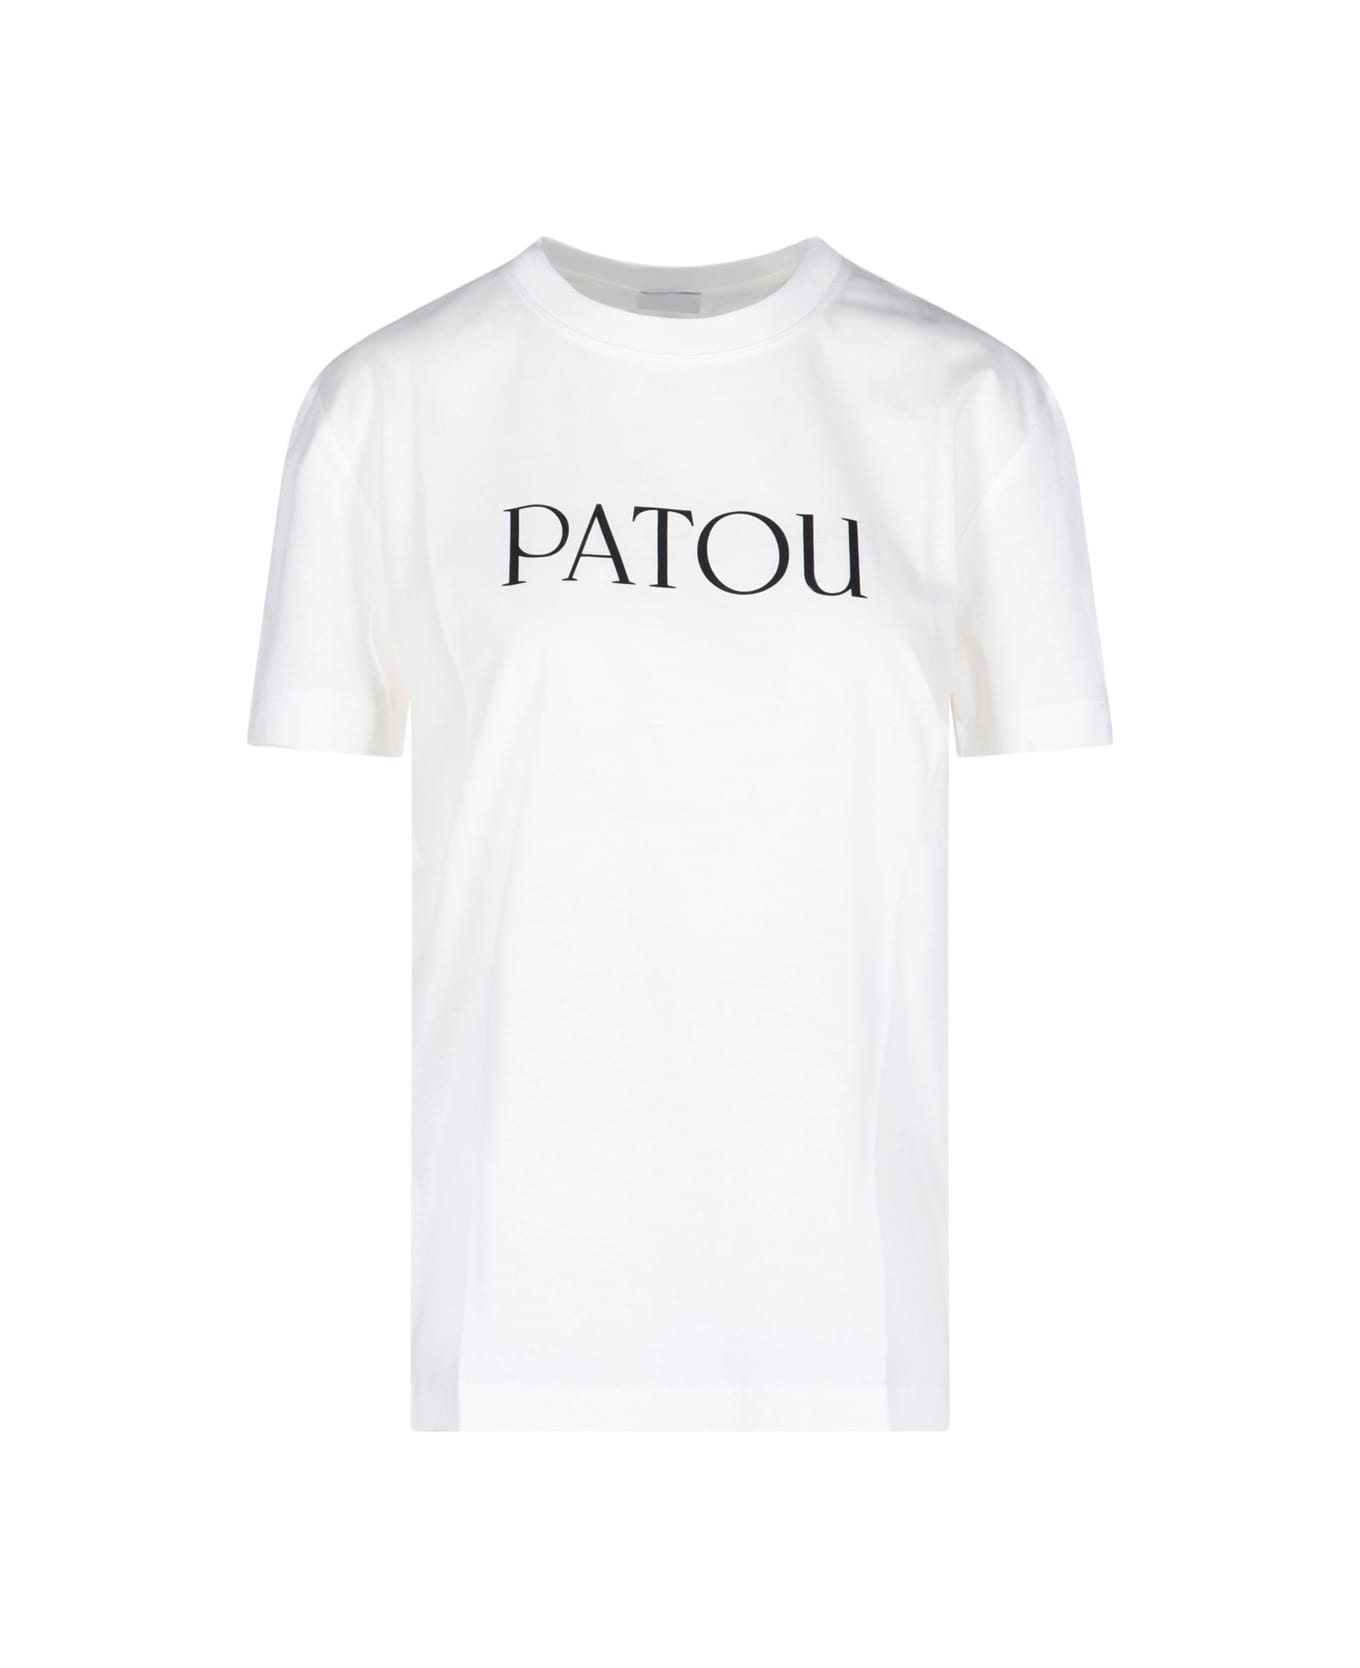 Patou Logo T-shirt Tシャツ